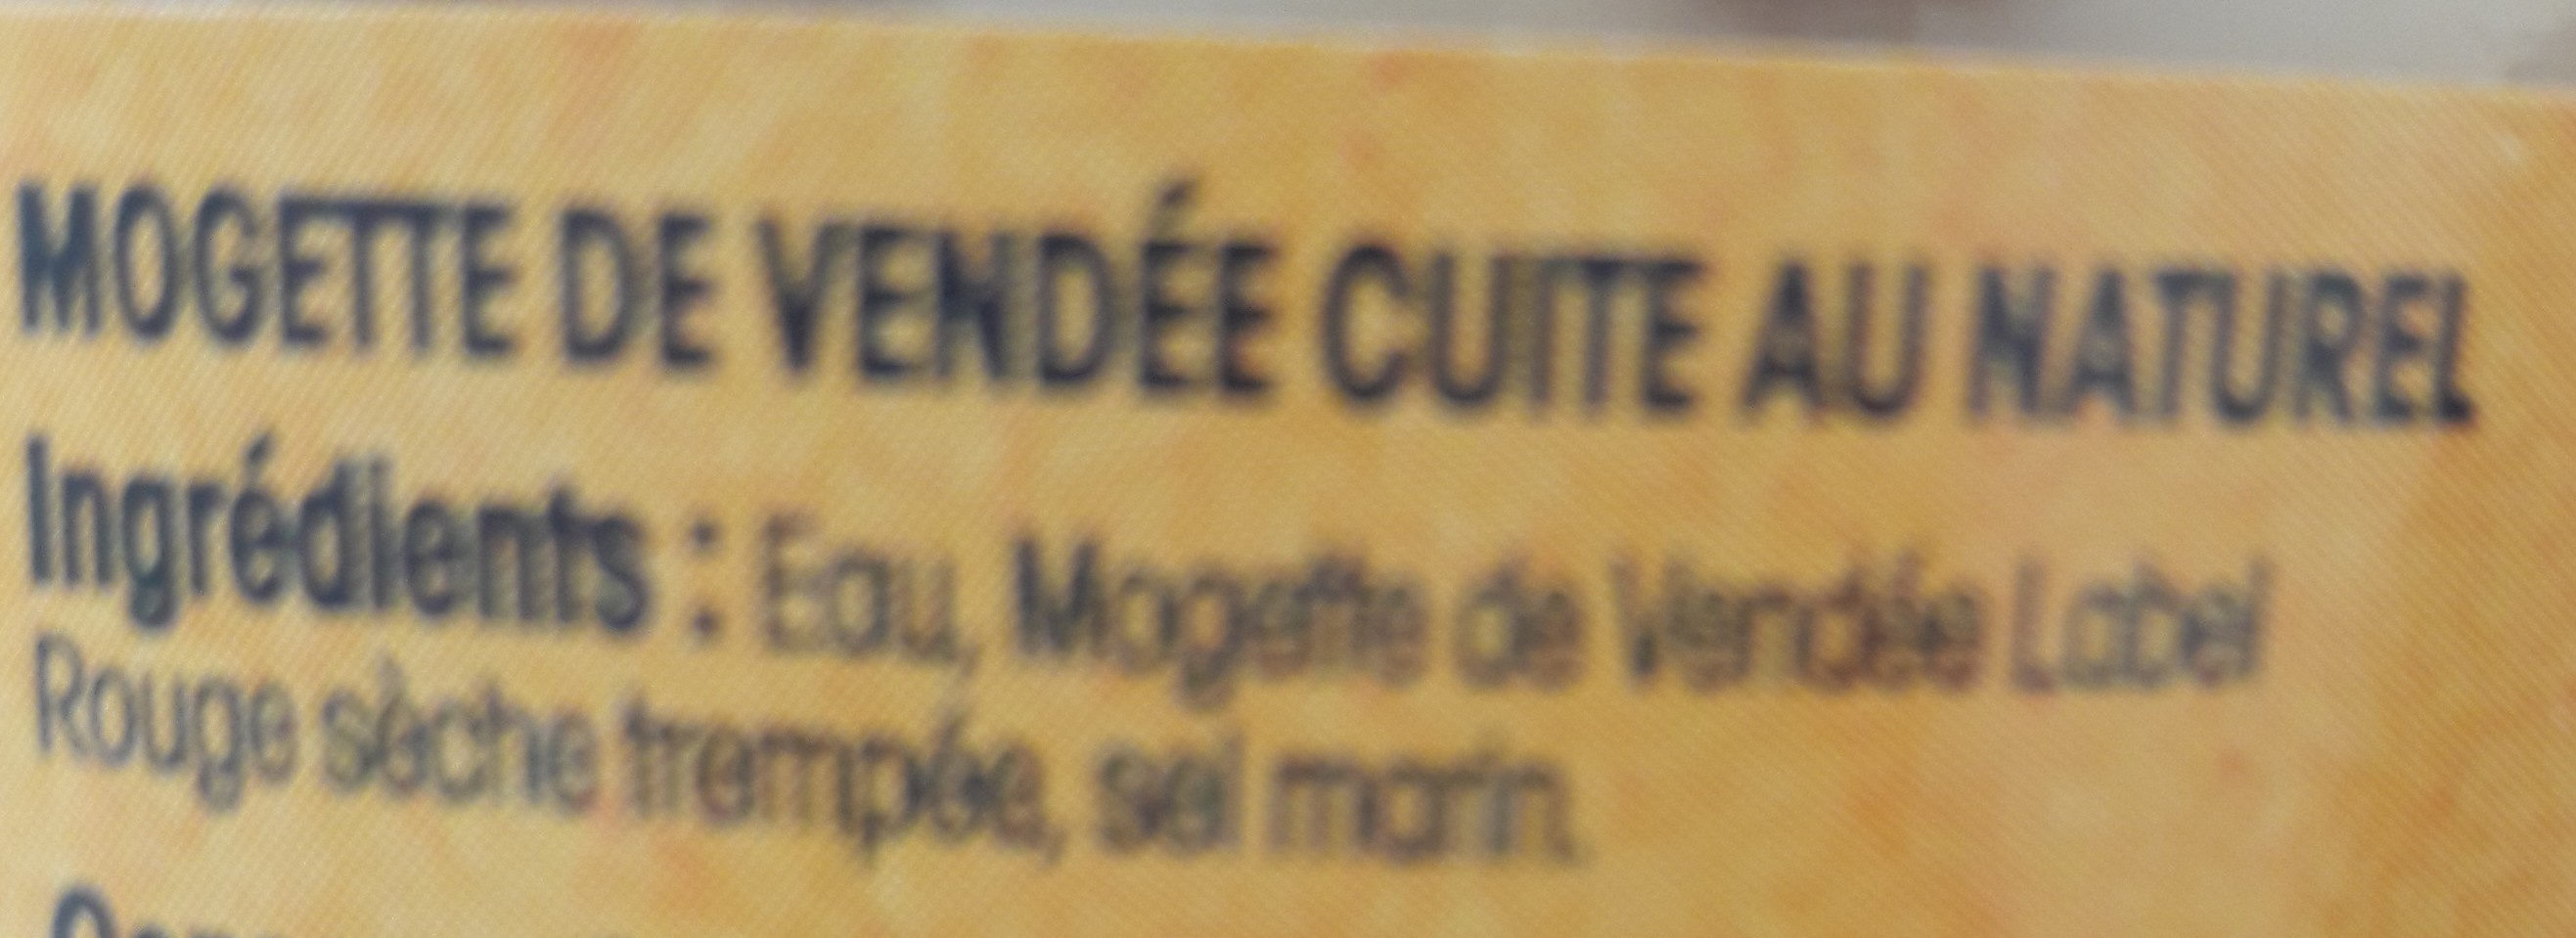 Mogettes De Vendée cuir au naturel - Ingrédients